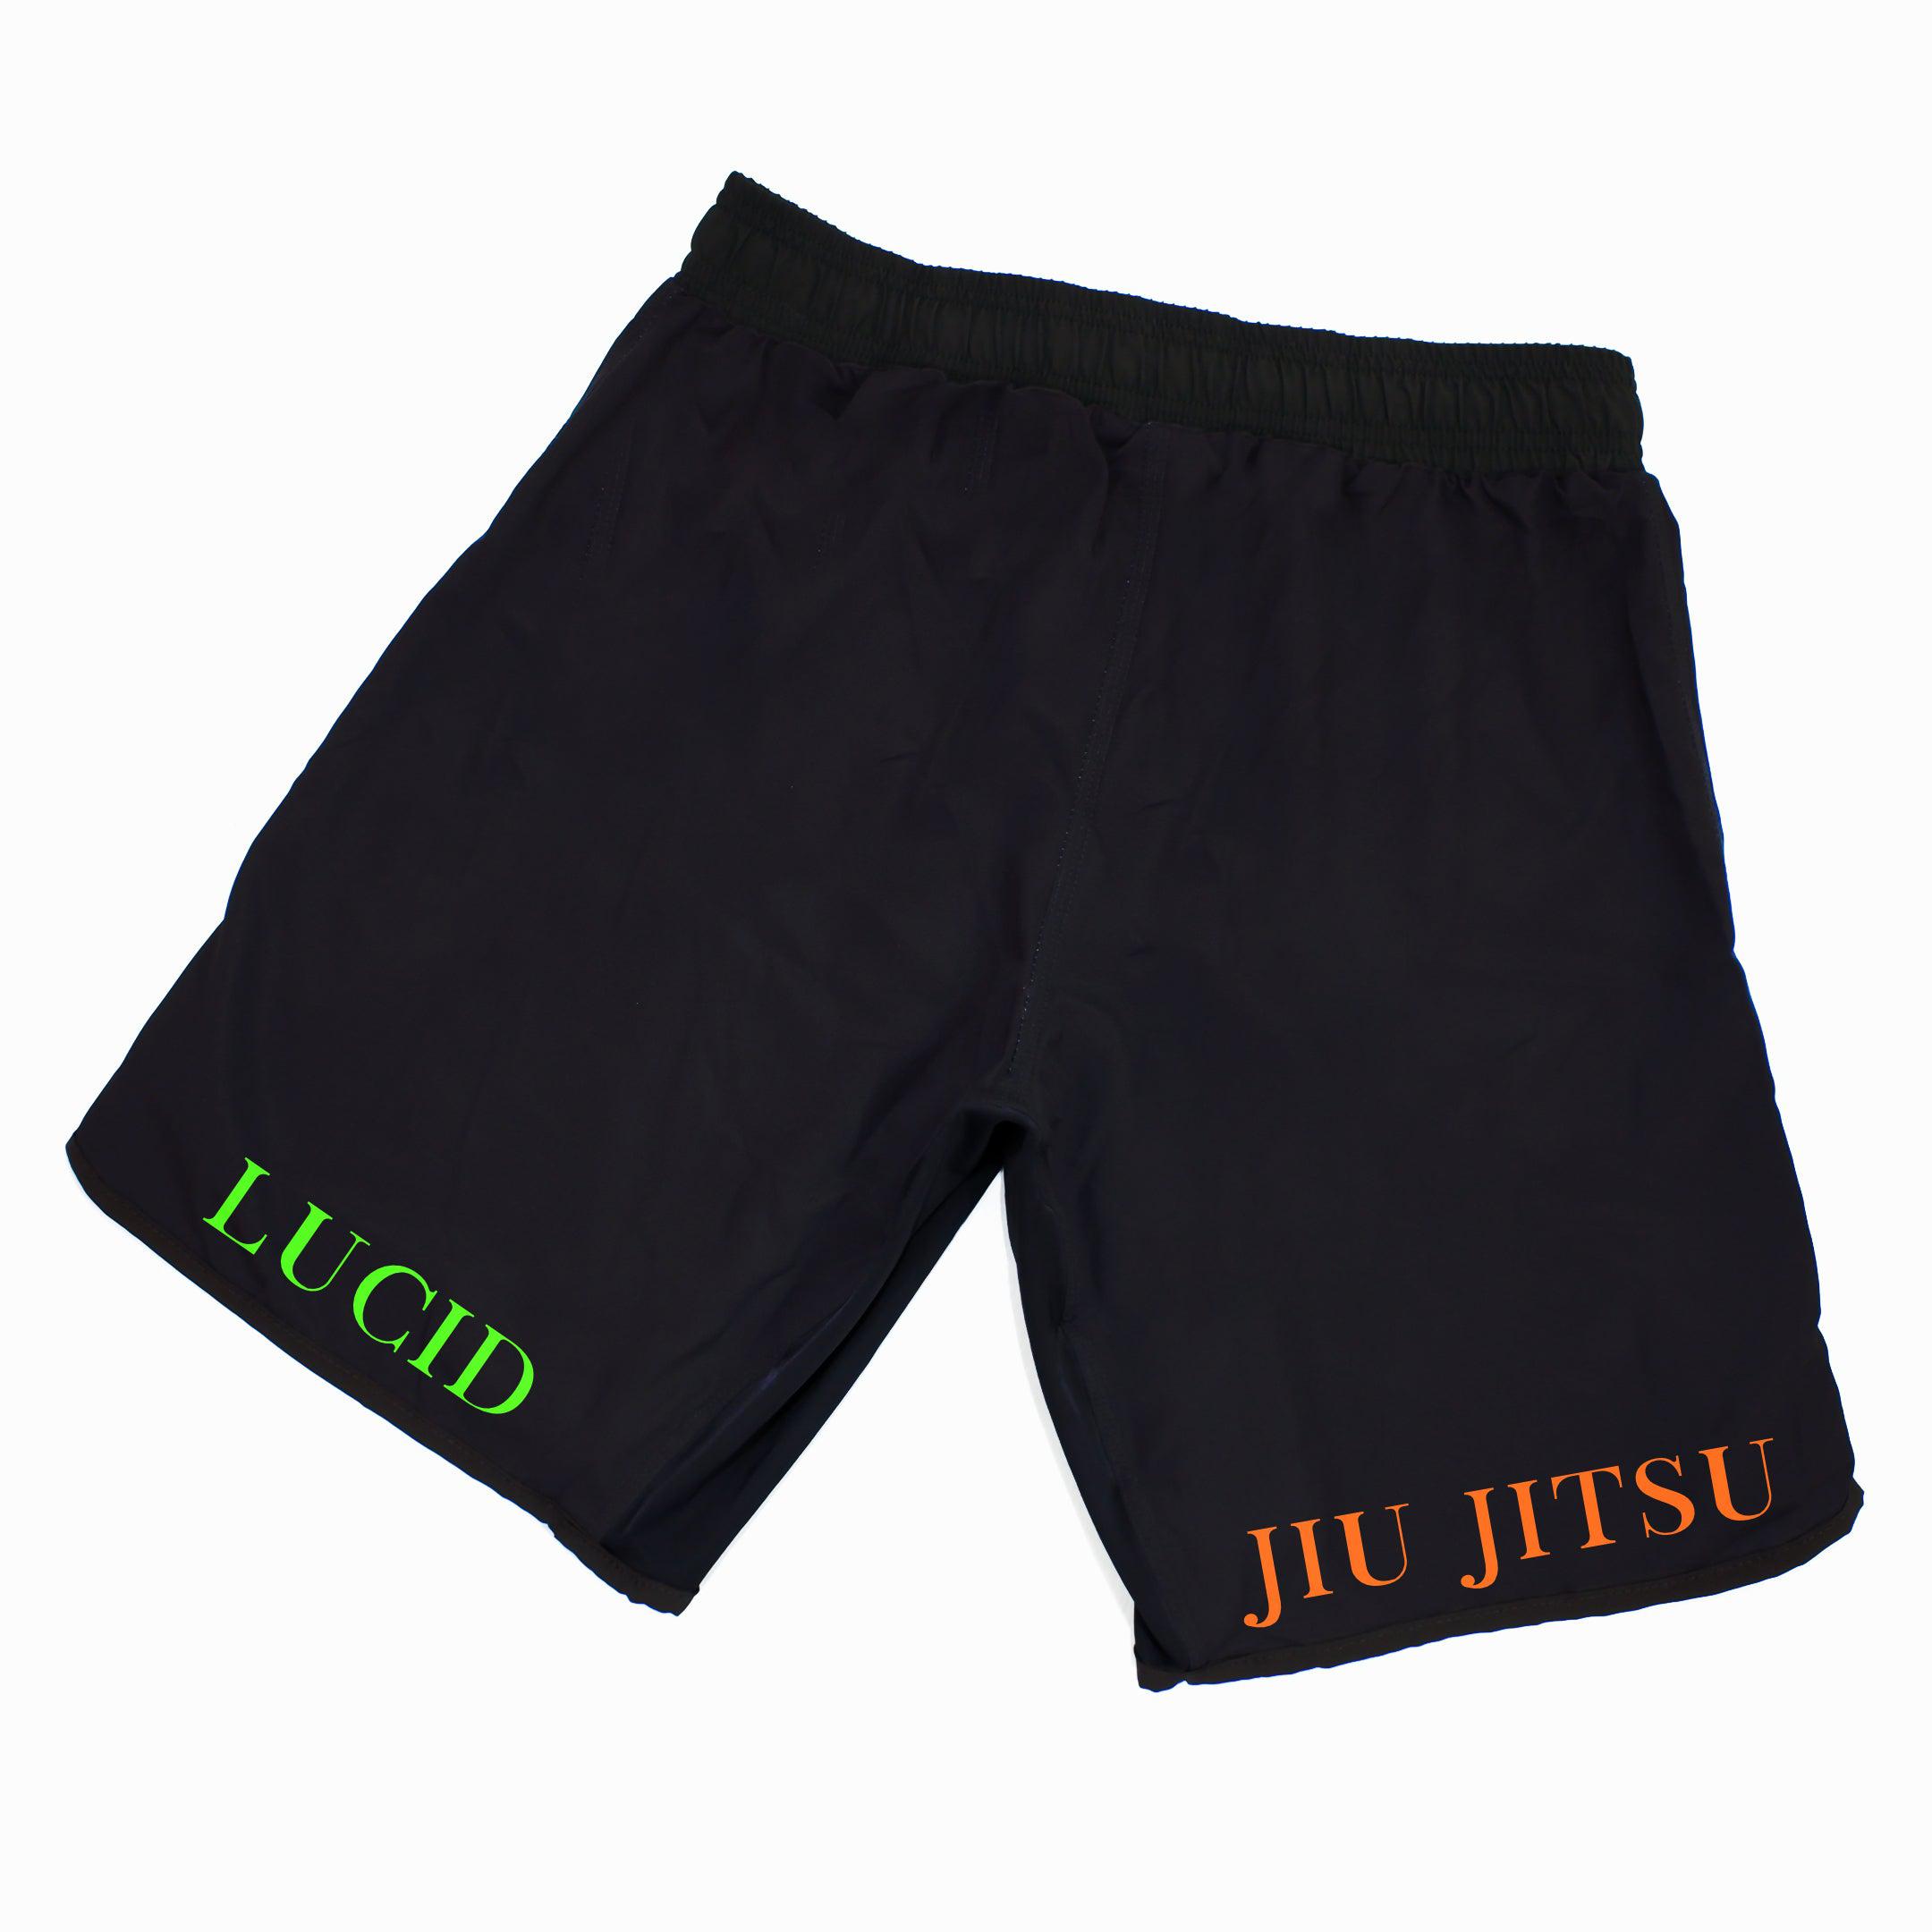 Lucid Jiu Jitsu Grappling Shorts